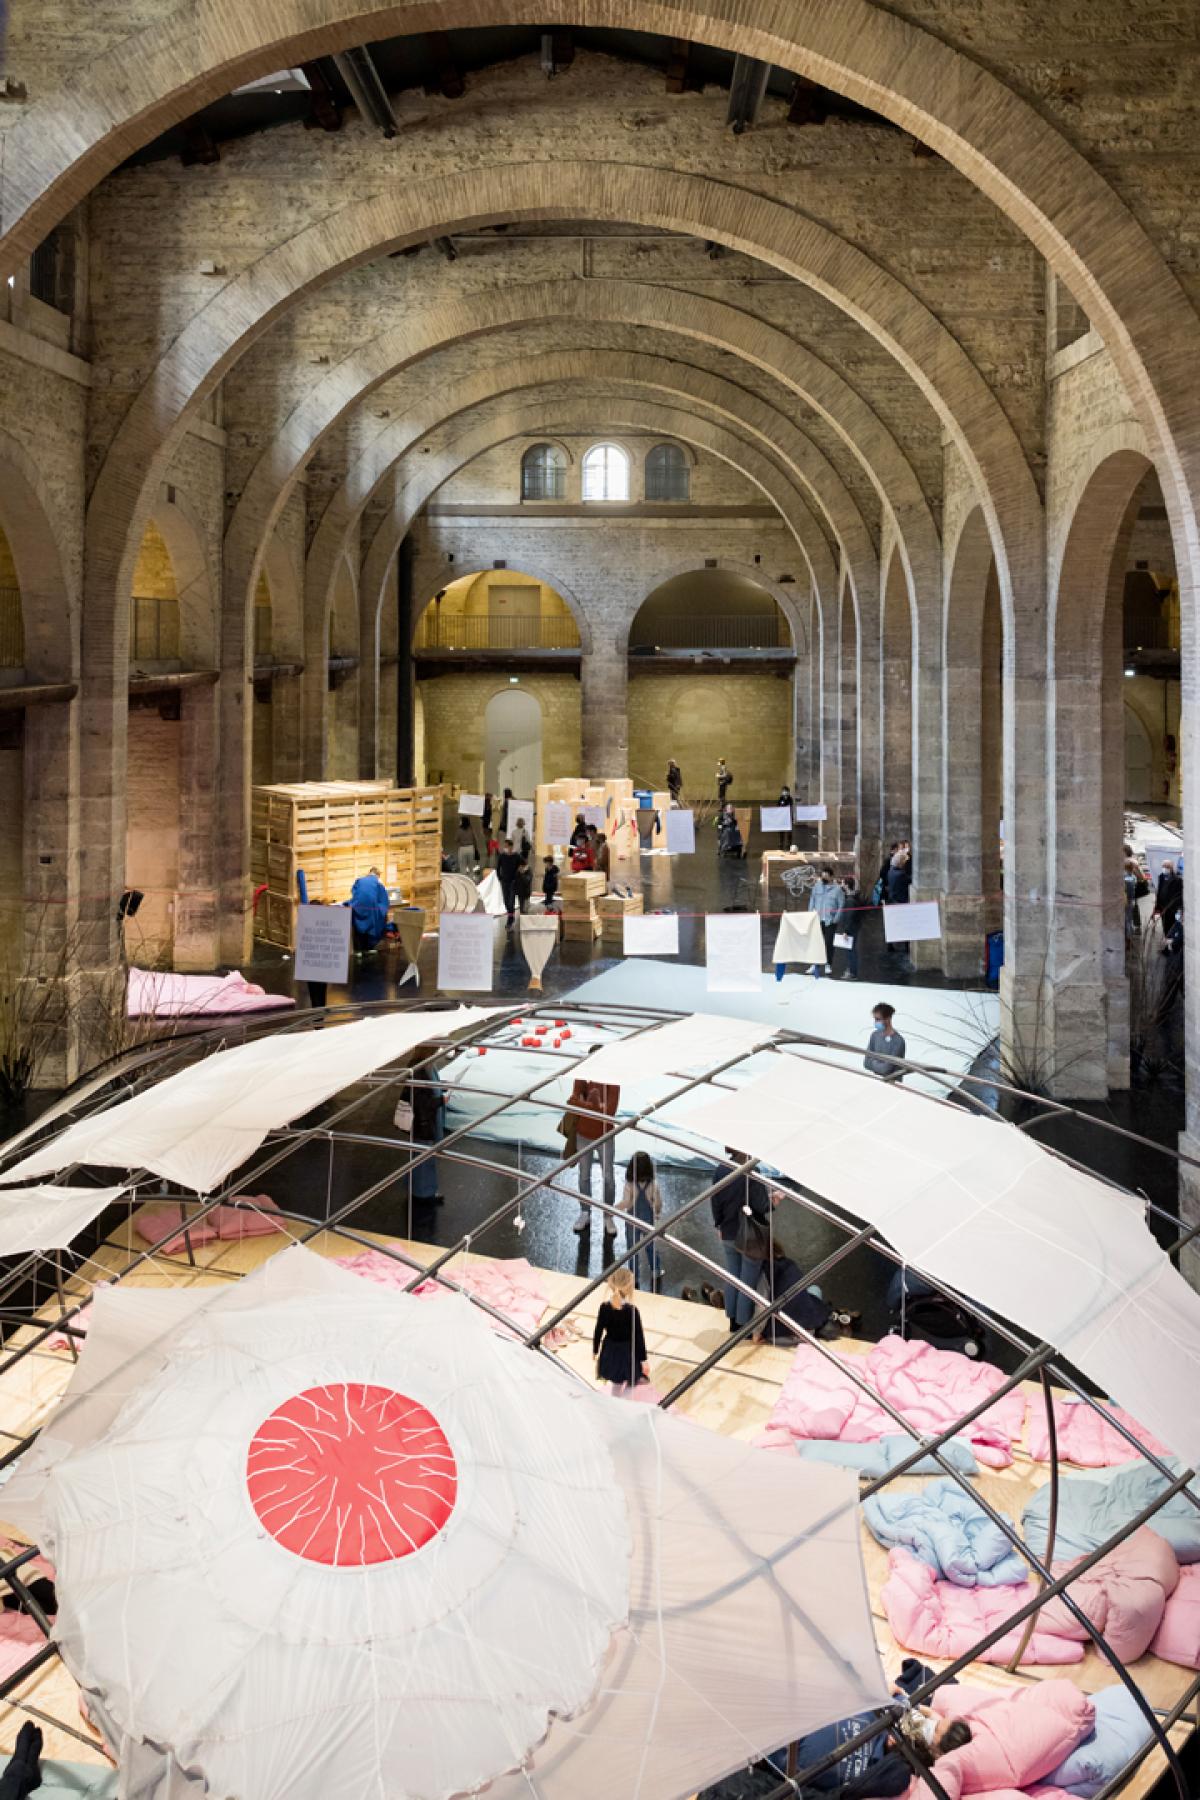 Vue de l'exposition Eva Kot’átková, "Mon corps n'est pas une île", Capc Musée d'art contemporain de Bordeaux, (10.02.2022 - 29.05.2022). Photo Arthur Péquin